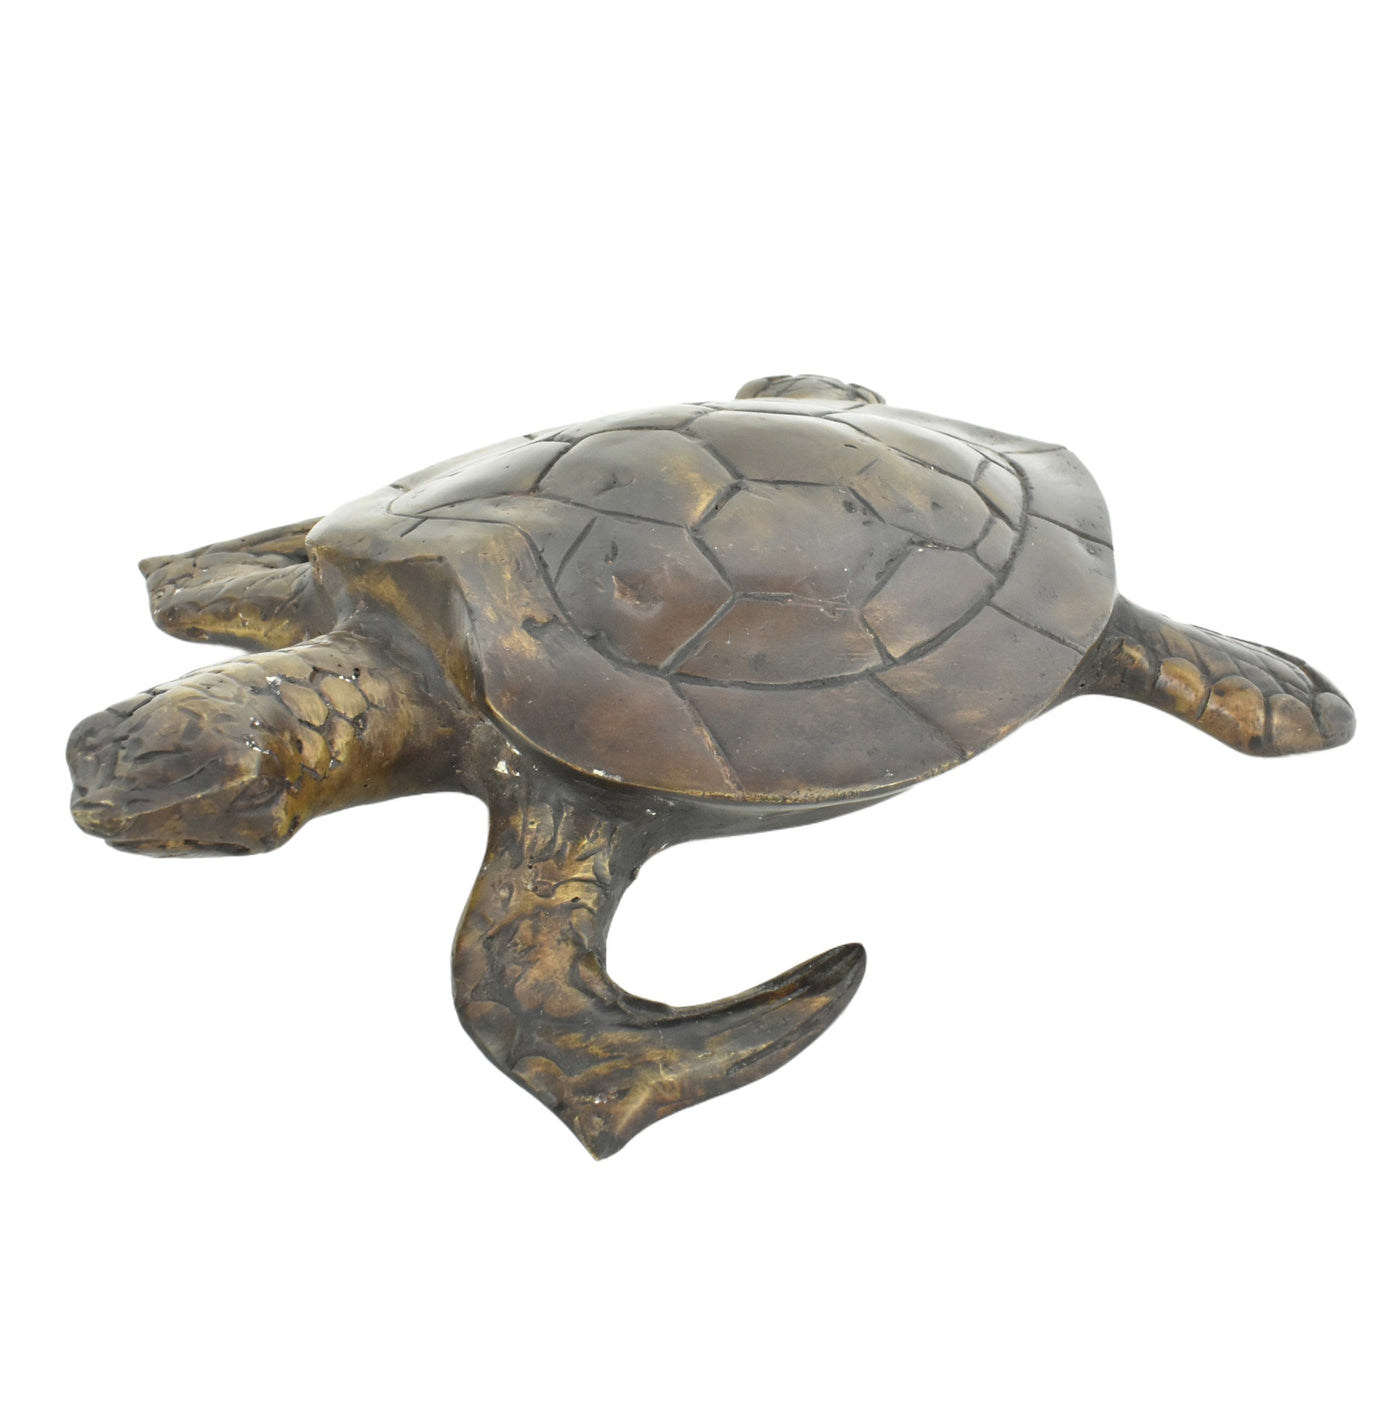 Bronze Turtle